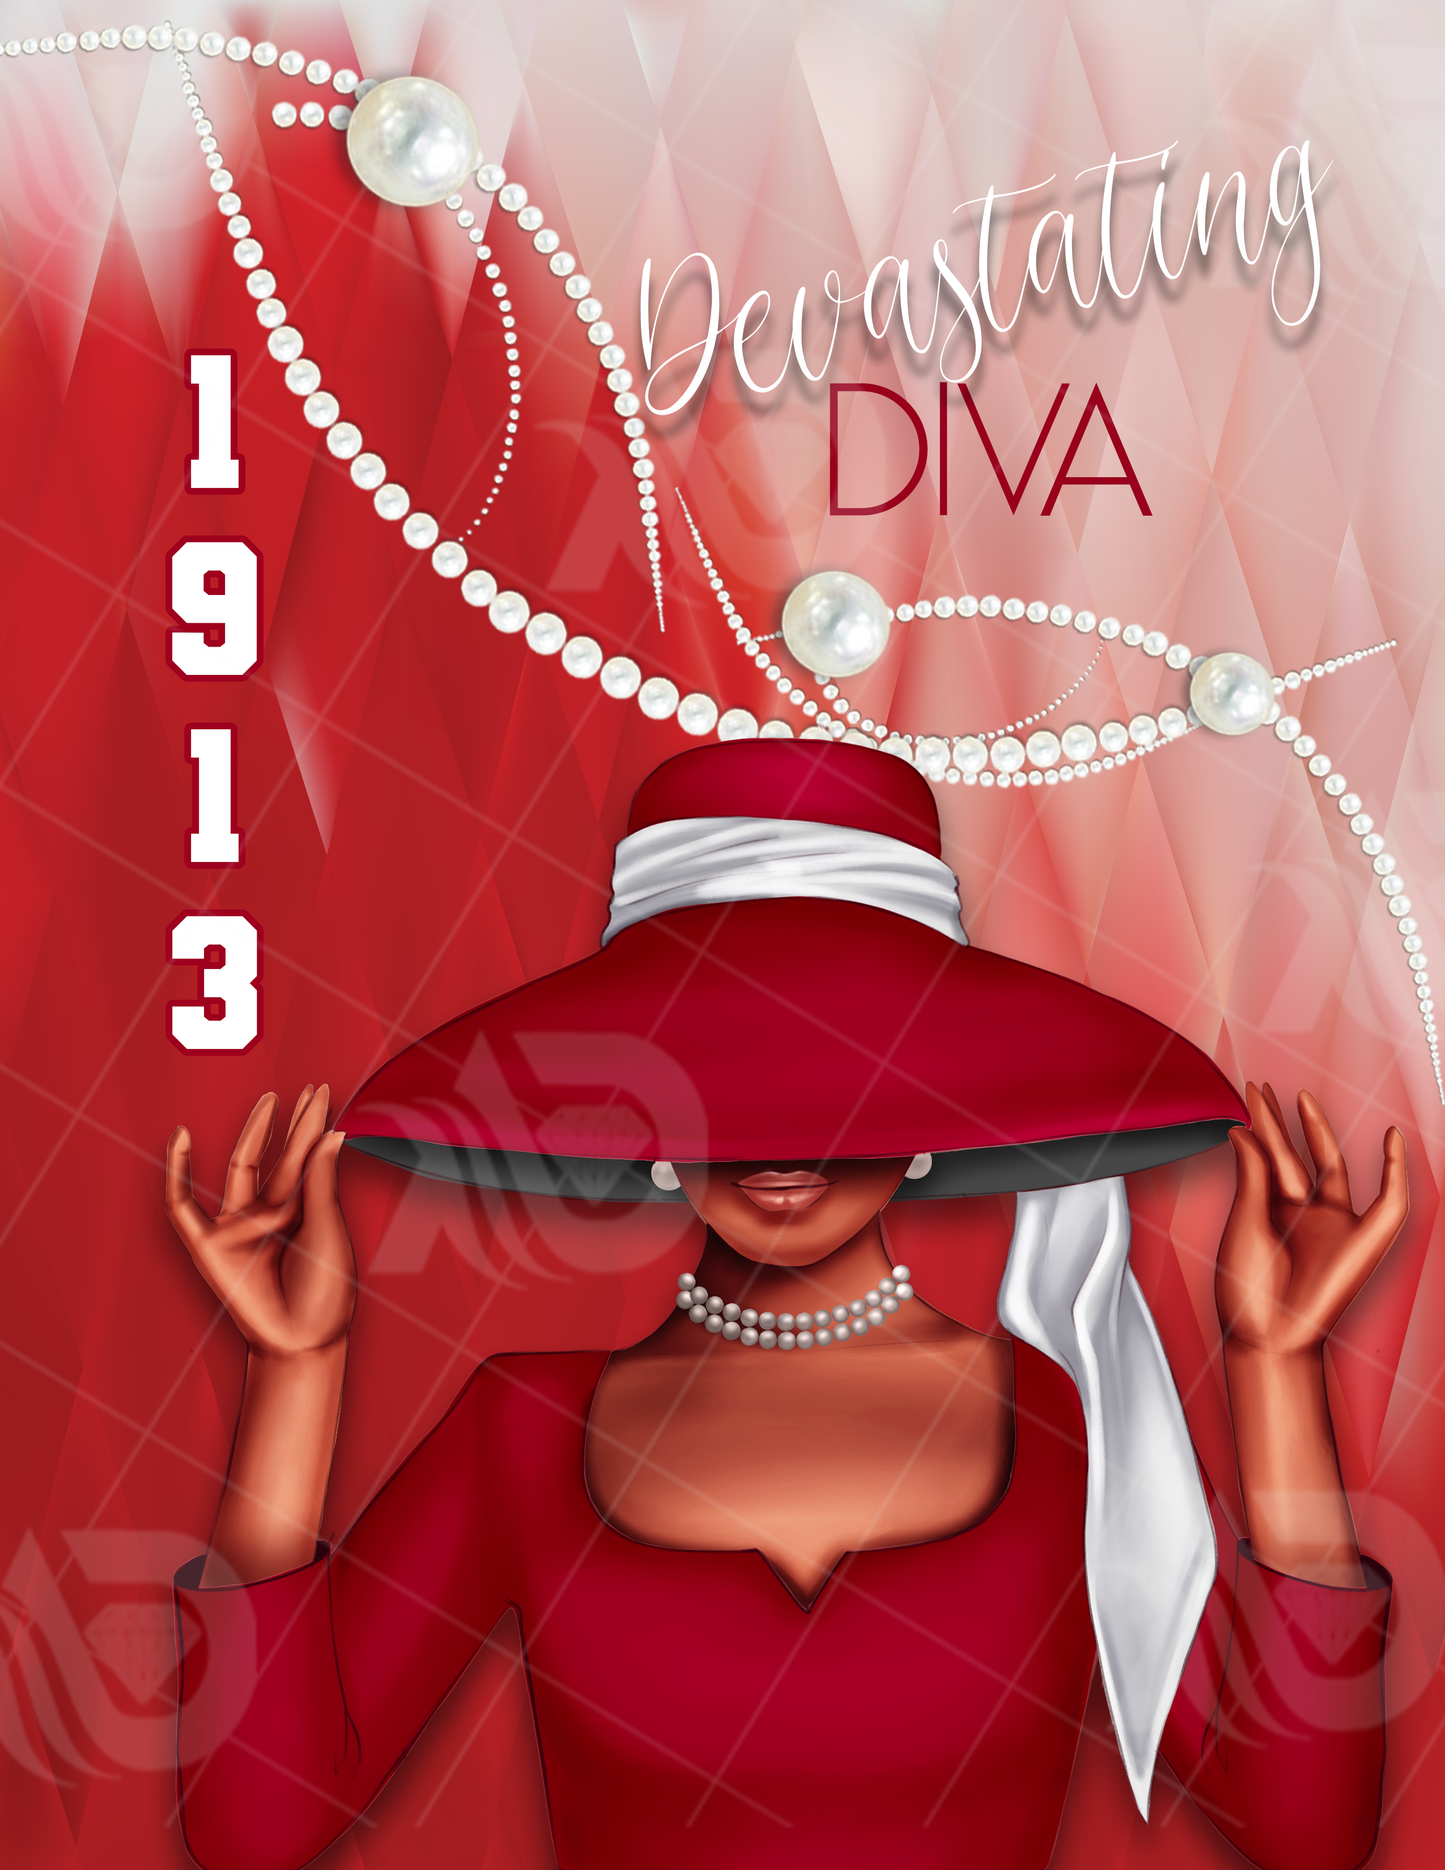 Devastating Diva Journal Cover